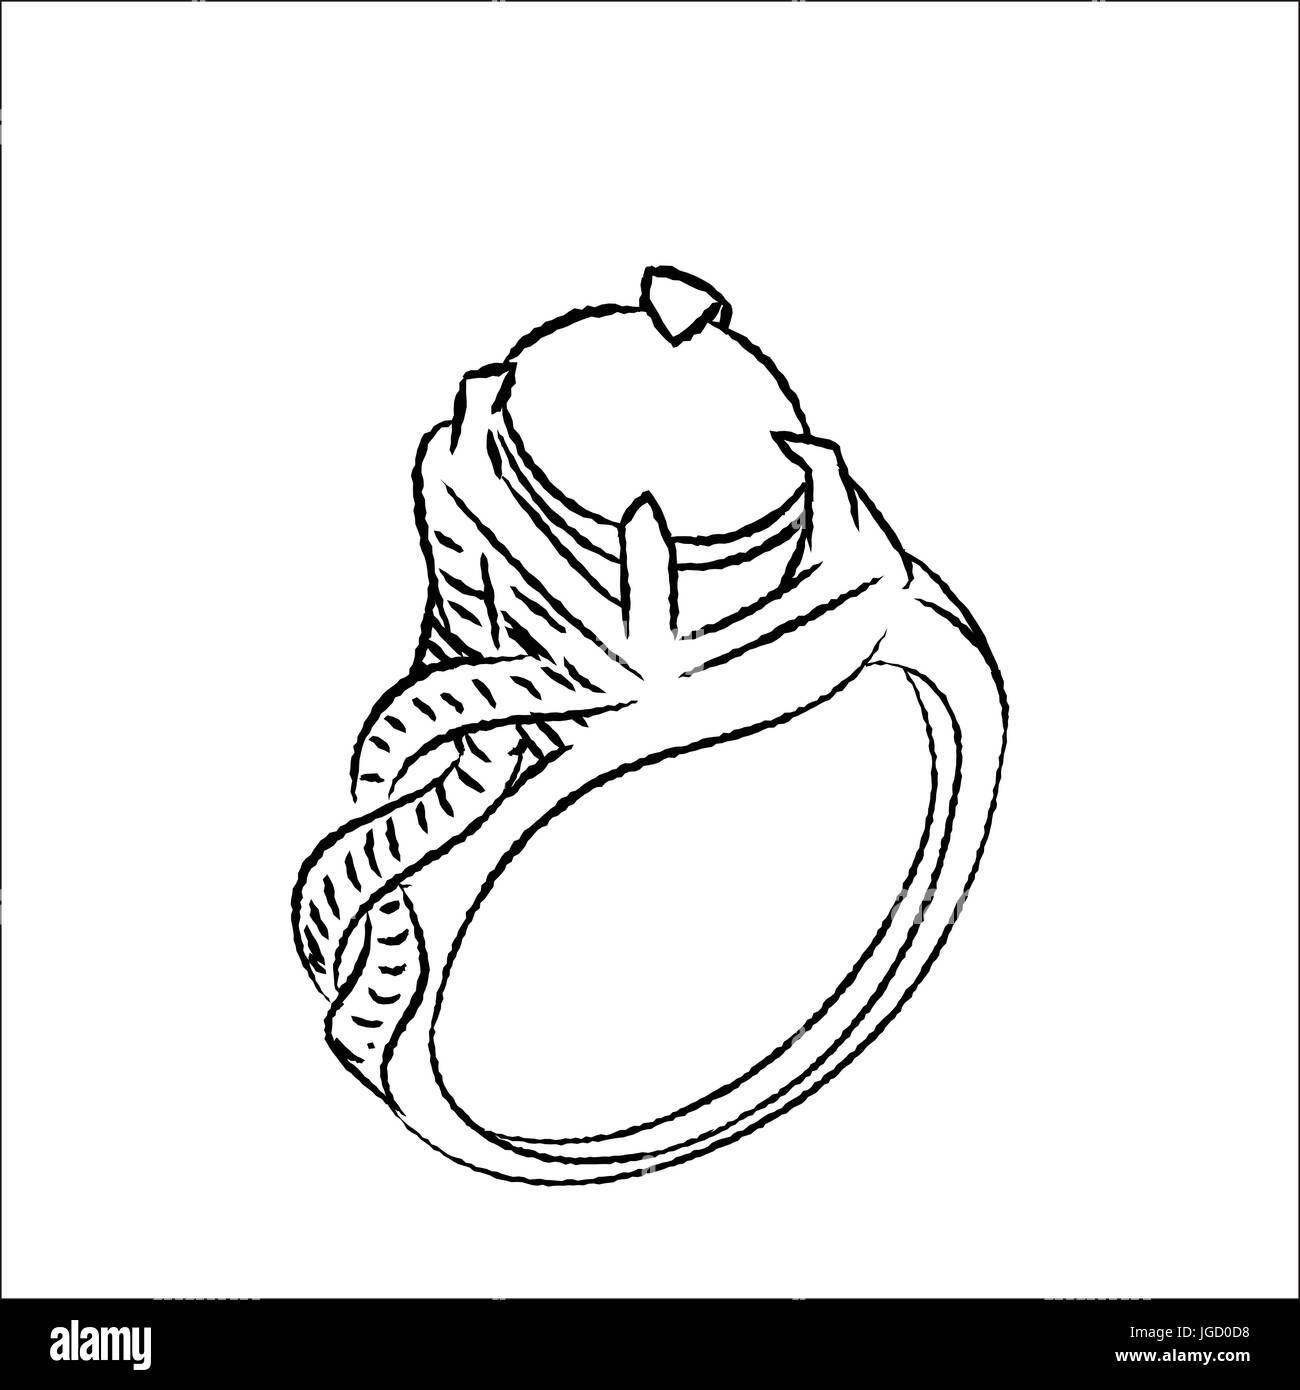 Hand engagement ring vector illustration Banque de photographies et  d'images à haute résolution - Alamy